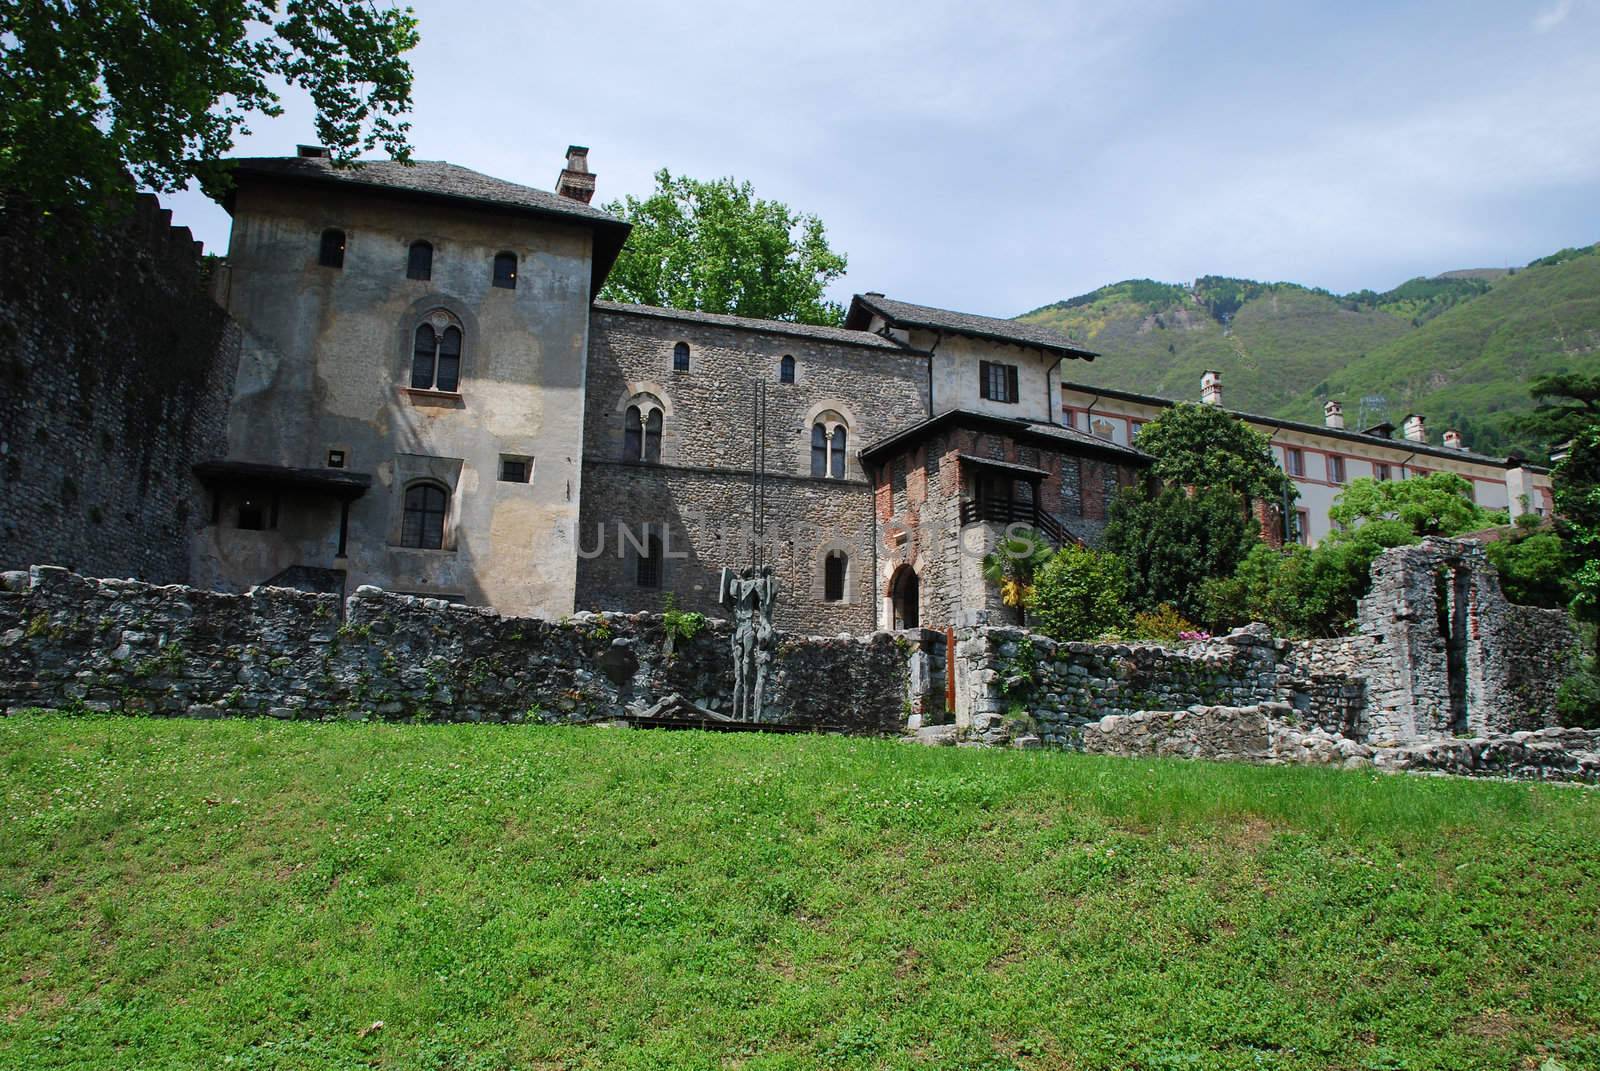 Castello Visconteo in Locarno, Ruines part by dariya64